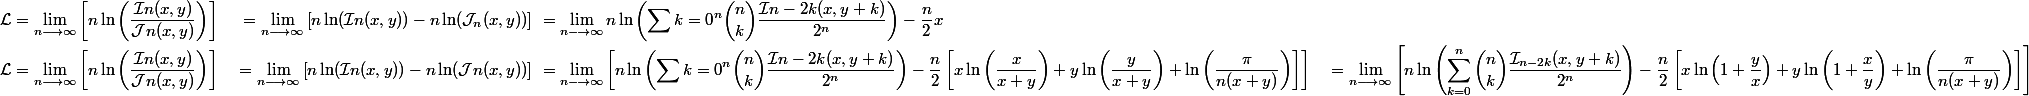 \begin{aligned}\mathcal{L} &= \lim\limits_{n \longrightarrow \infty} \left[n \ln\left(\dfrac{\mathcal{I}n(x, y)}{\mathcal{J}n(x, y)}\right)\right] \ &= \lim\limits_{n \longrightarrow \infty} \left[n \ln(\mathcal{I}n(x, y)) - n \ln(\mathcal{J}_n(x, y))\right] \ &= \lim\limits_{n \longrightarrow \infty} n \ln\left(\sum{k=0}^n \binom{n}{k} \dfrac{\mathcal{I}{n-2k}(x, y + k)}{2^n}\right) - \dfrac{n}{2}x \\ \mathcal{L} &= \lim\limits_{n \longrightarrow \infty} \left[n \ln\left(\dfrac{\mathcal{I}n(x, y)}{\mathcal{J}n(x, y)}\right)\right] \ &= \lim\limits_{n \longrightarrow \infty} \left[n \ln(\mathcal{I}n(x, y)) - n \ln(\mathcal{J}n(x, y))\right] \ &= \lim\limits_{n \longrightarrow \infty} \left[n \ln\left(\sum{k=0}^n \binom{n}{k} \dfrac{\mathcal{I}{n-2k}(x, y + k)}{2^n}\right) - \dfrac{n}{2}\left[x\ln\left(\dfrac{x}{x + y}\right) + y\ln\left(\dfrac{y}{x + y}\right) + \ln\left(\dfrac{\pi}{n(x + y)}\right)\right]\right] \ &= \lim\limits_{n \longrightarrow \infty} \left[n \ln\left(\sum_{k=0}^n \binom{n}{k} \dfrac{\mathcal{I}_{n-2k}(x, y + k)}{2^n}\right) - \dfrac{n}{2}\left[x\ln\left(1 + \dfrac{y}{x}\right) + y\ln\left(1 + \dfrac{x}{y}\right) + \ln\left(\dfrac{\pi}{n(x + y)}\right)\right]\right]\end{aligned}